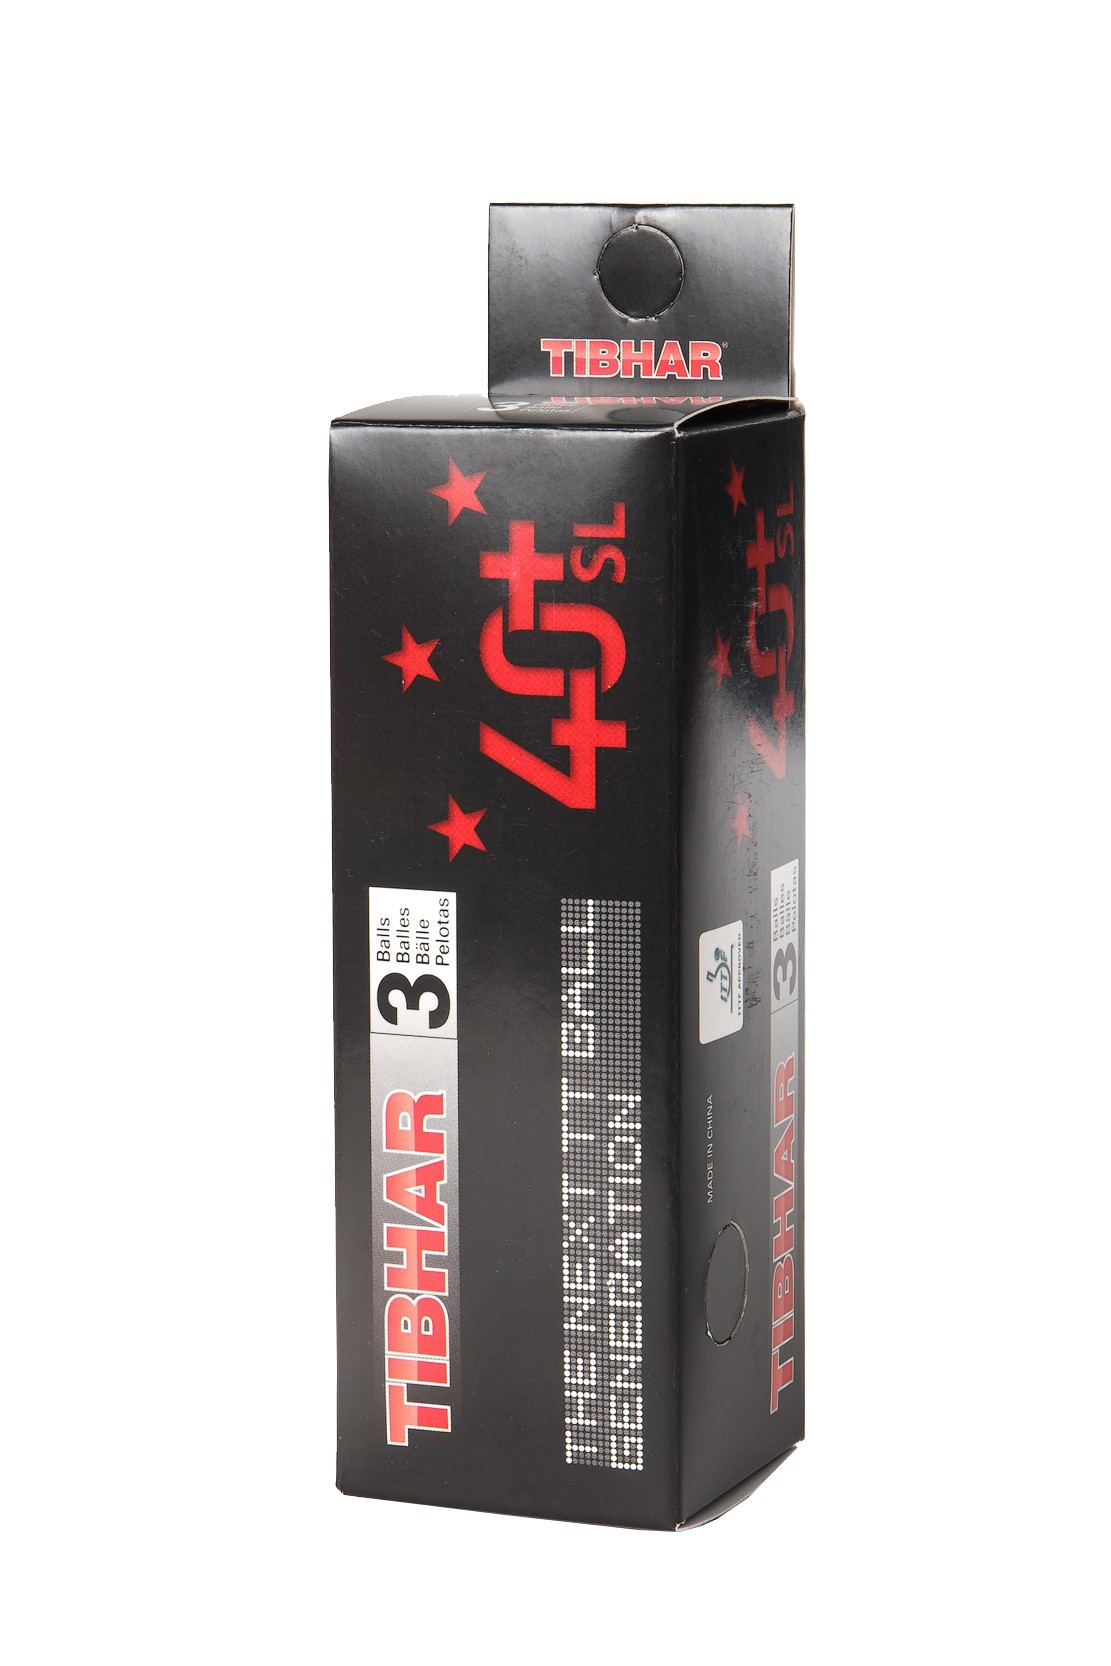 Tibhar 3*** 40+ SL (seamless) 3 balls Tabletennis11 (TT11)